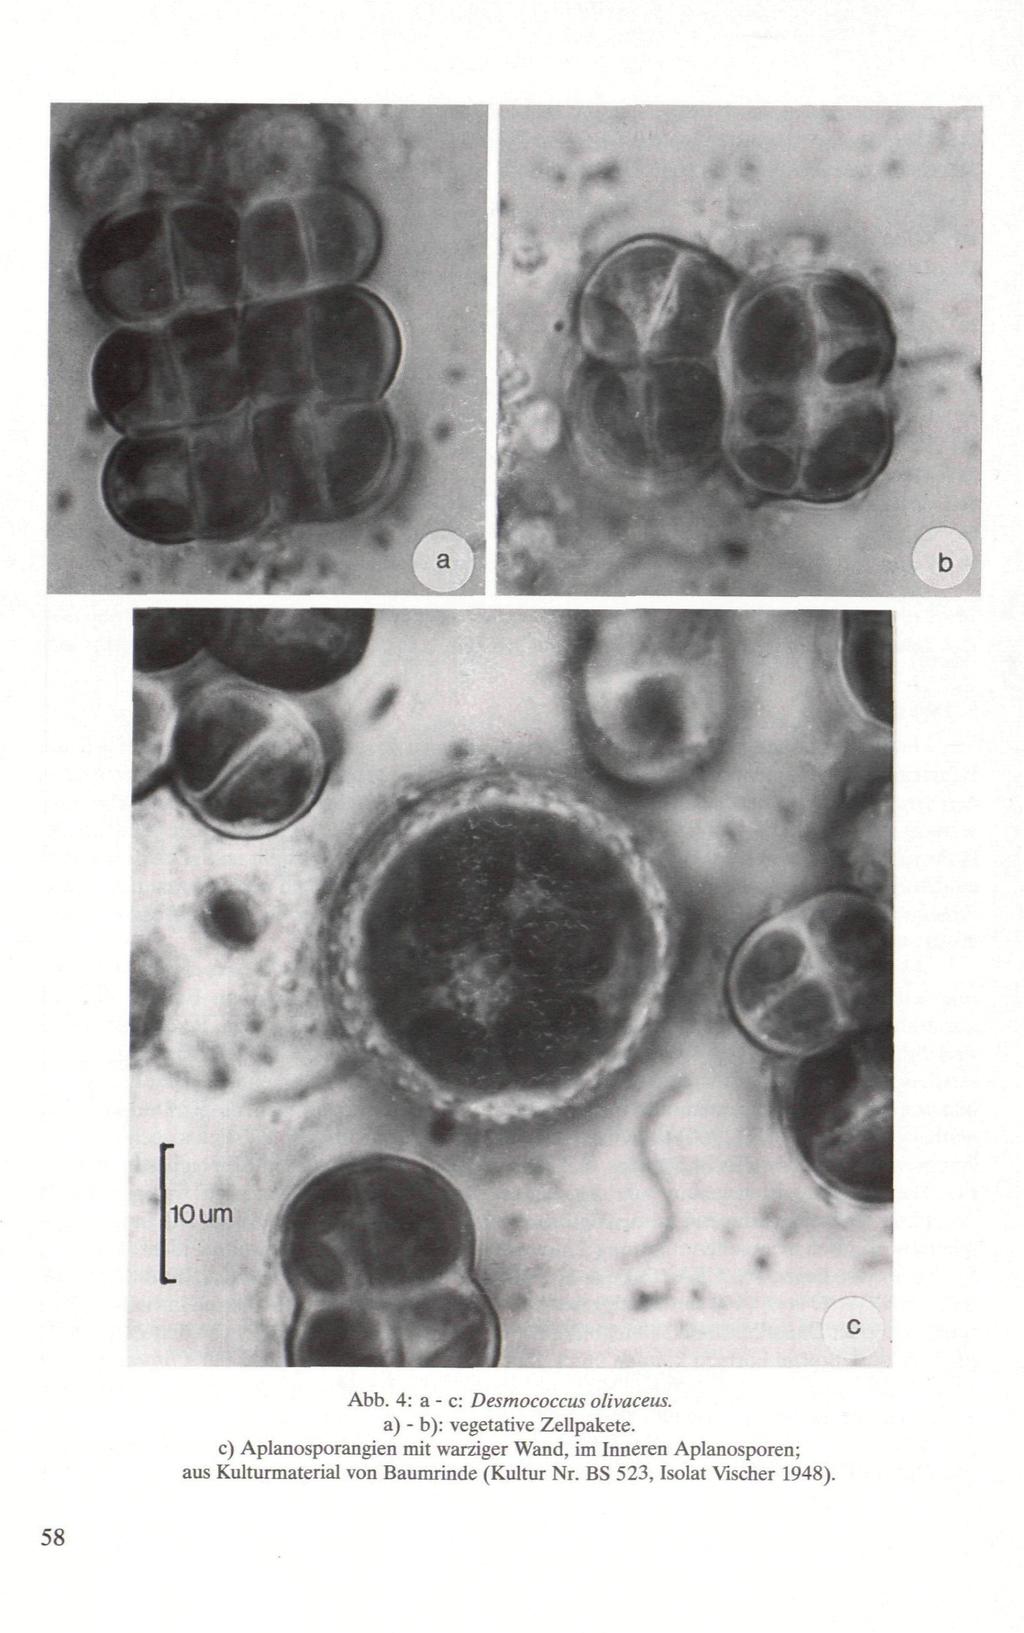 Abb. 4: a - e: Desmococcus olivaceus. a) - b): vegetative Zellpakete.